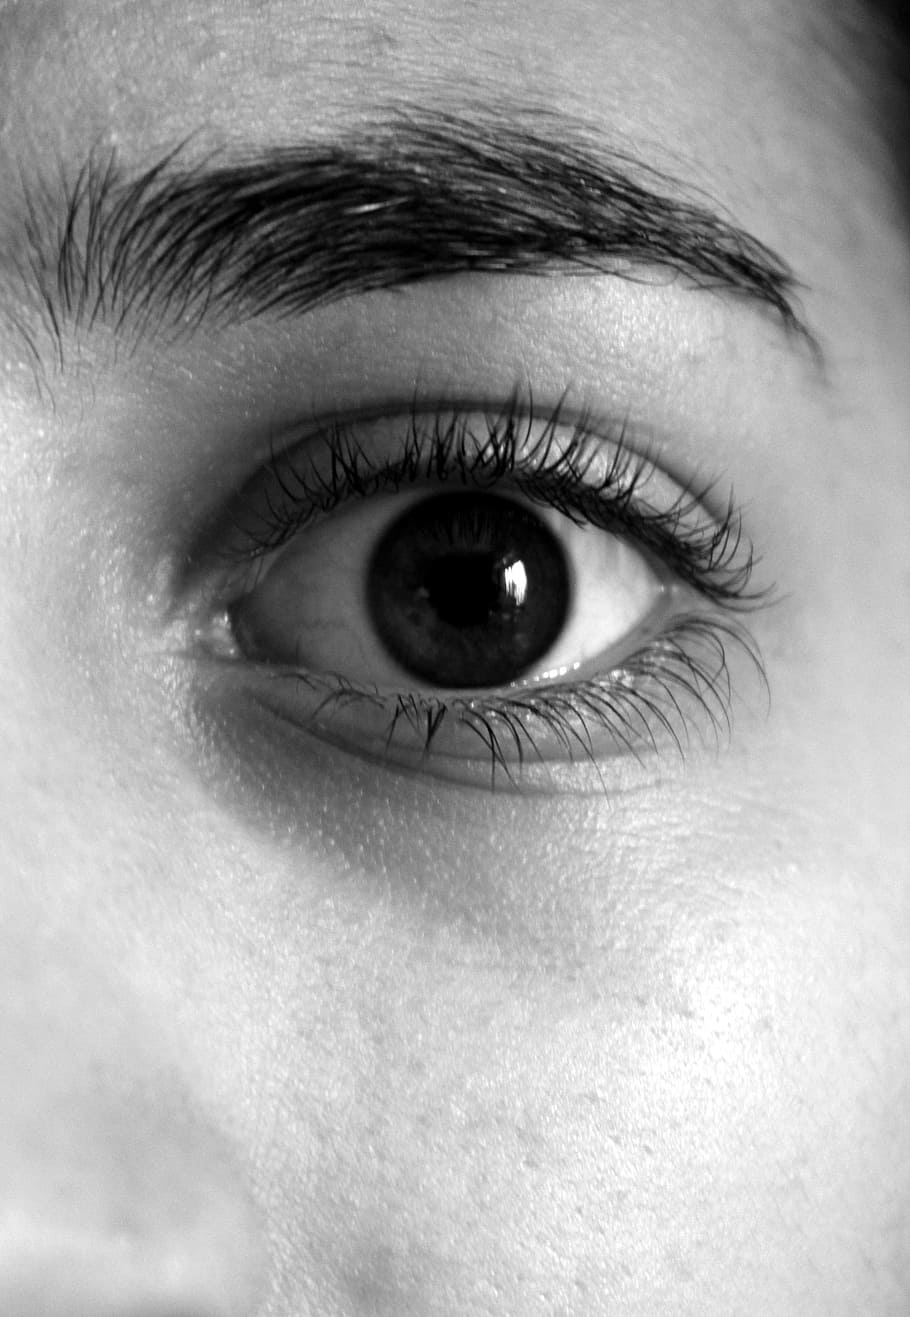 Persona que muestra ojos, ojos, cejas, pestañas, cara, ojo humano, ojo, parte del cuerpo humano, parte del cuerpo, vista